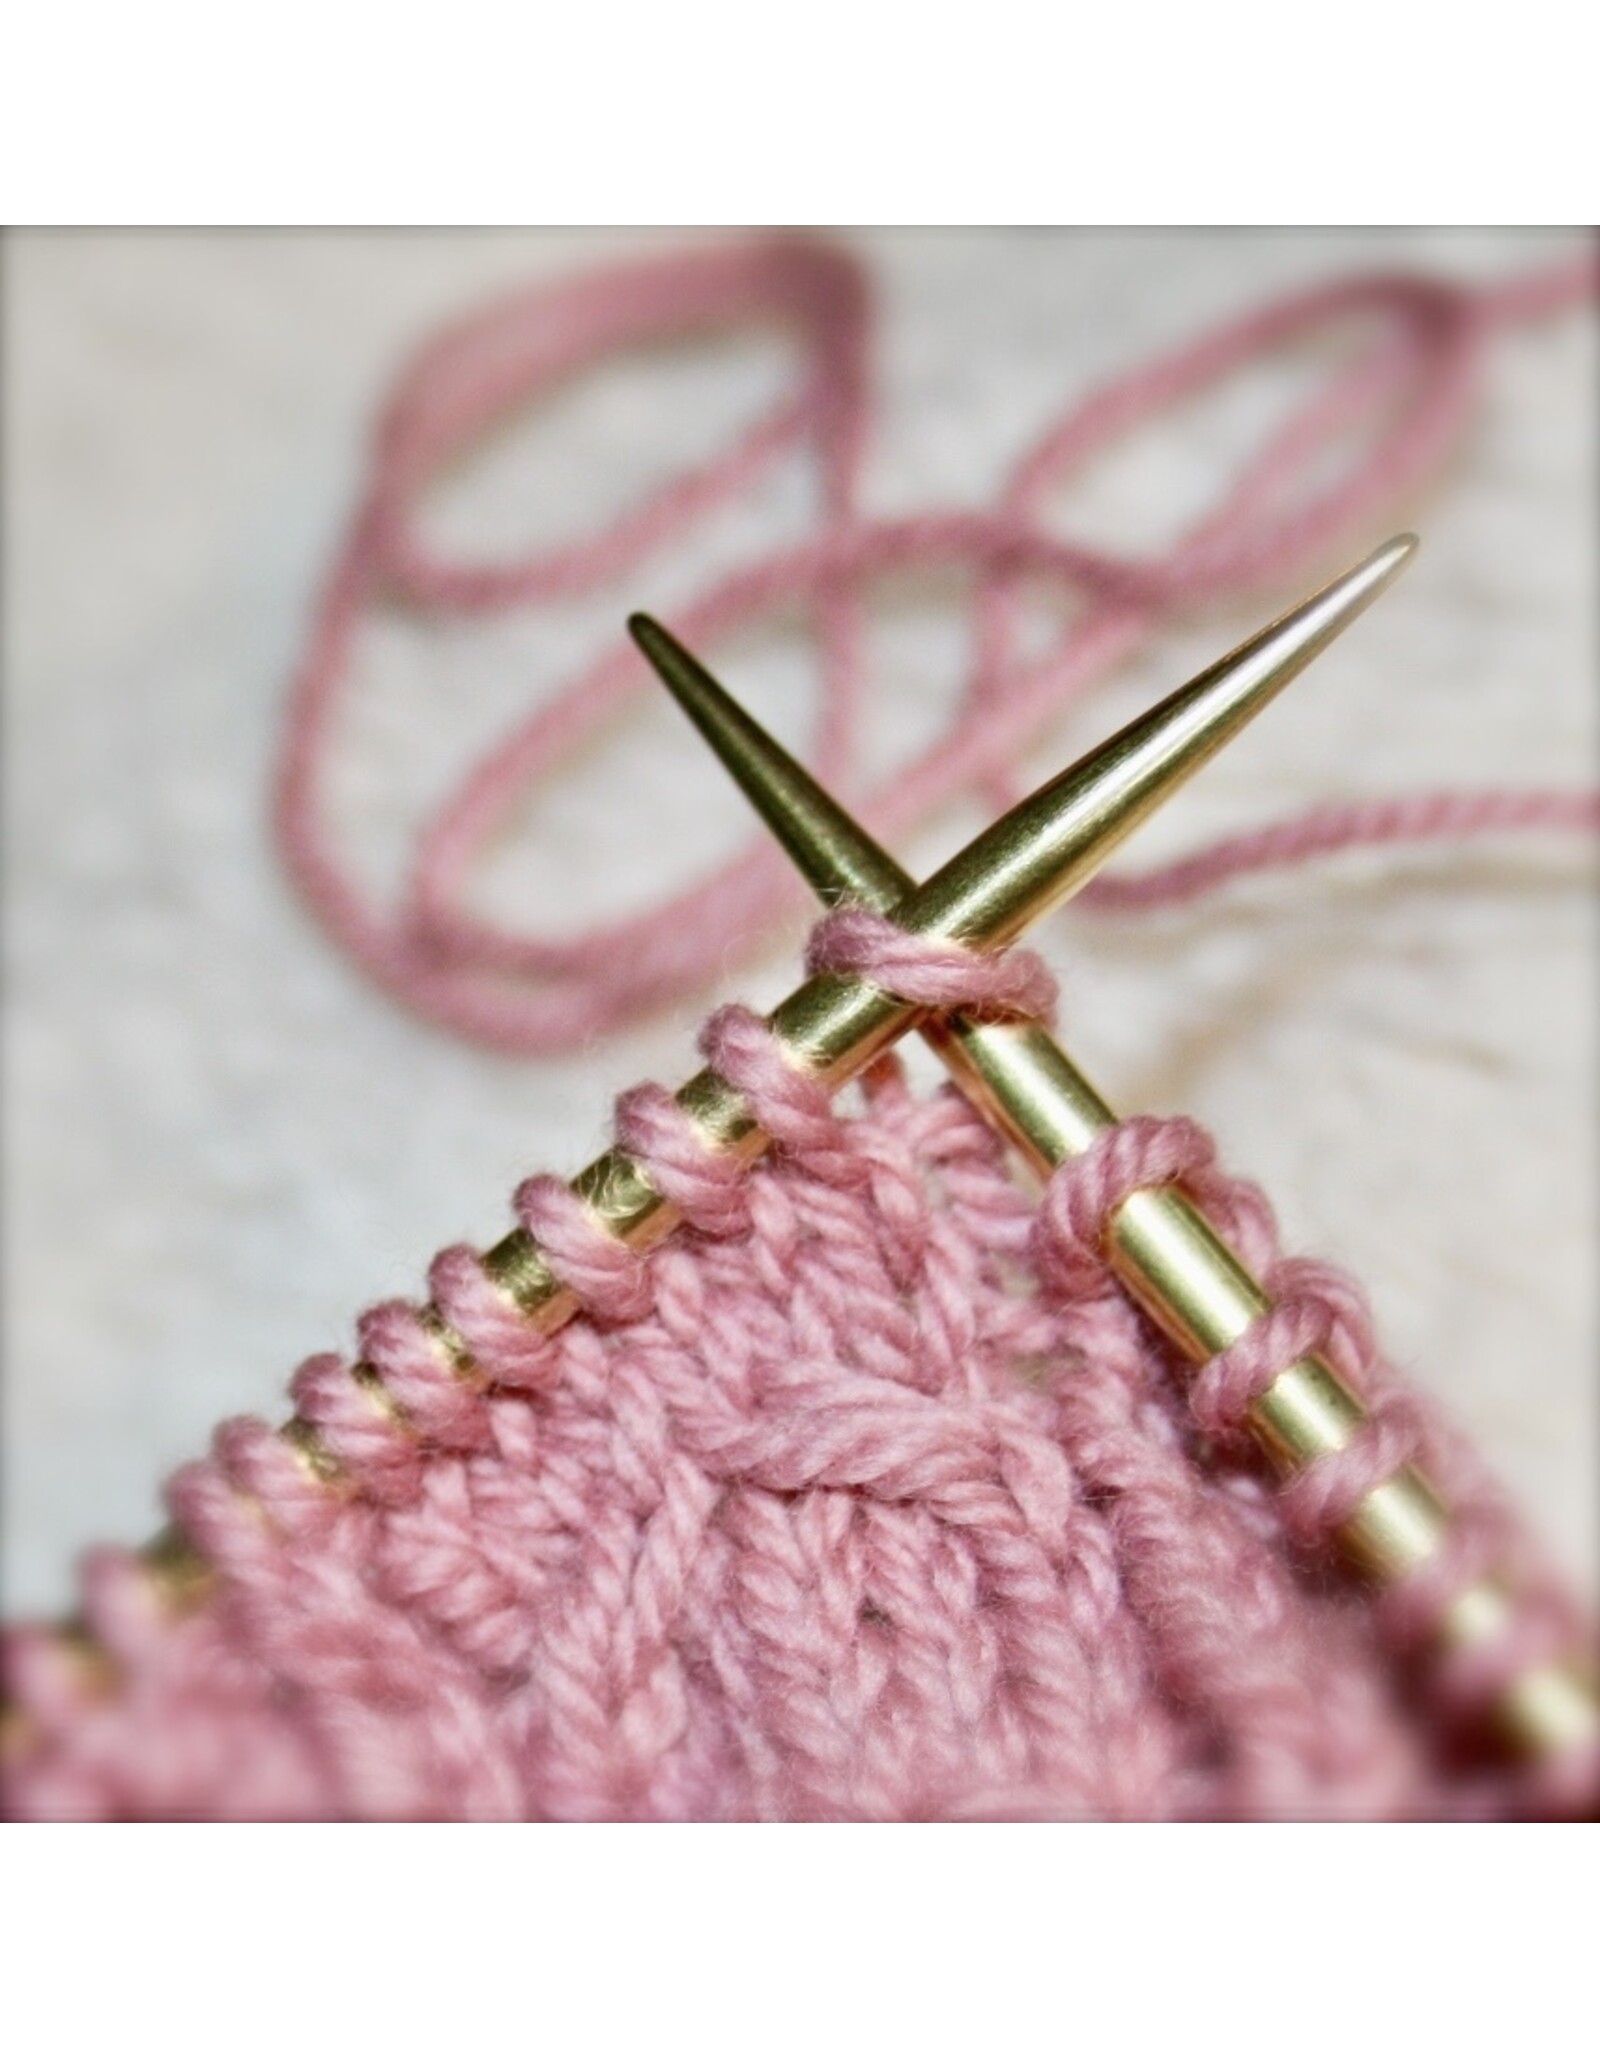 For Yarn's Sake Intro to Knitting. May 26